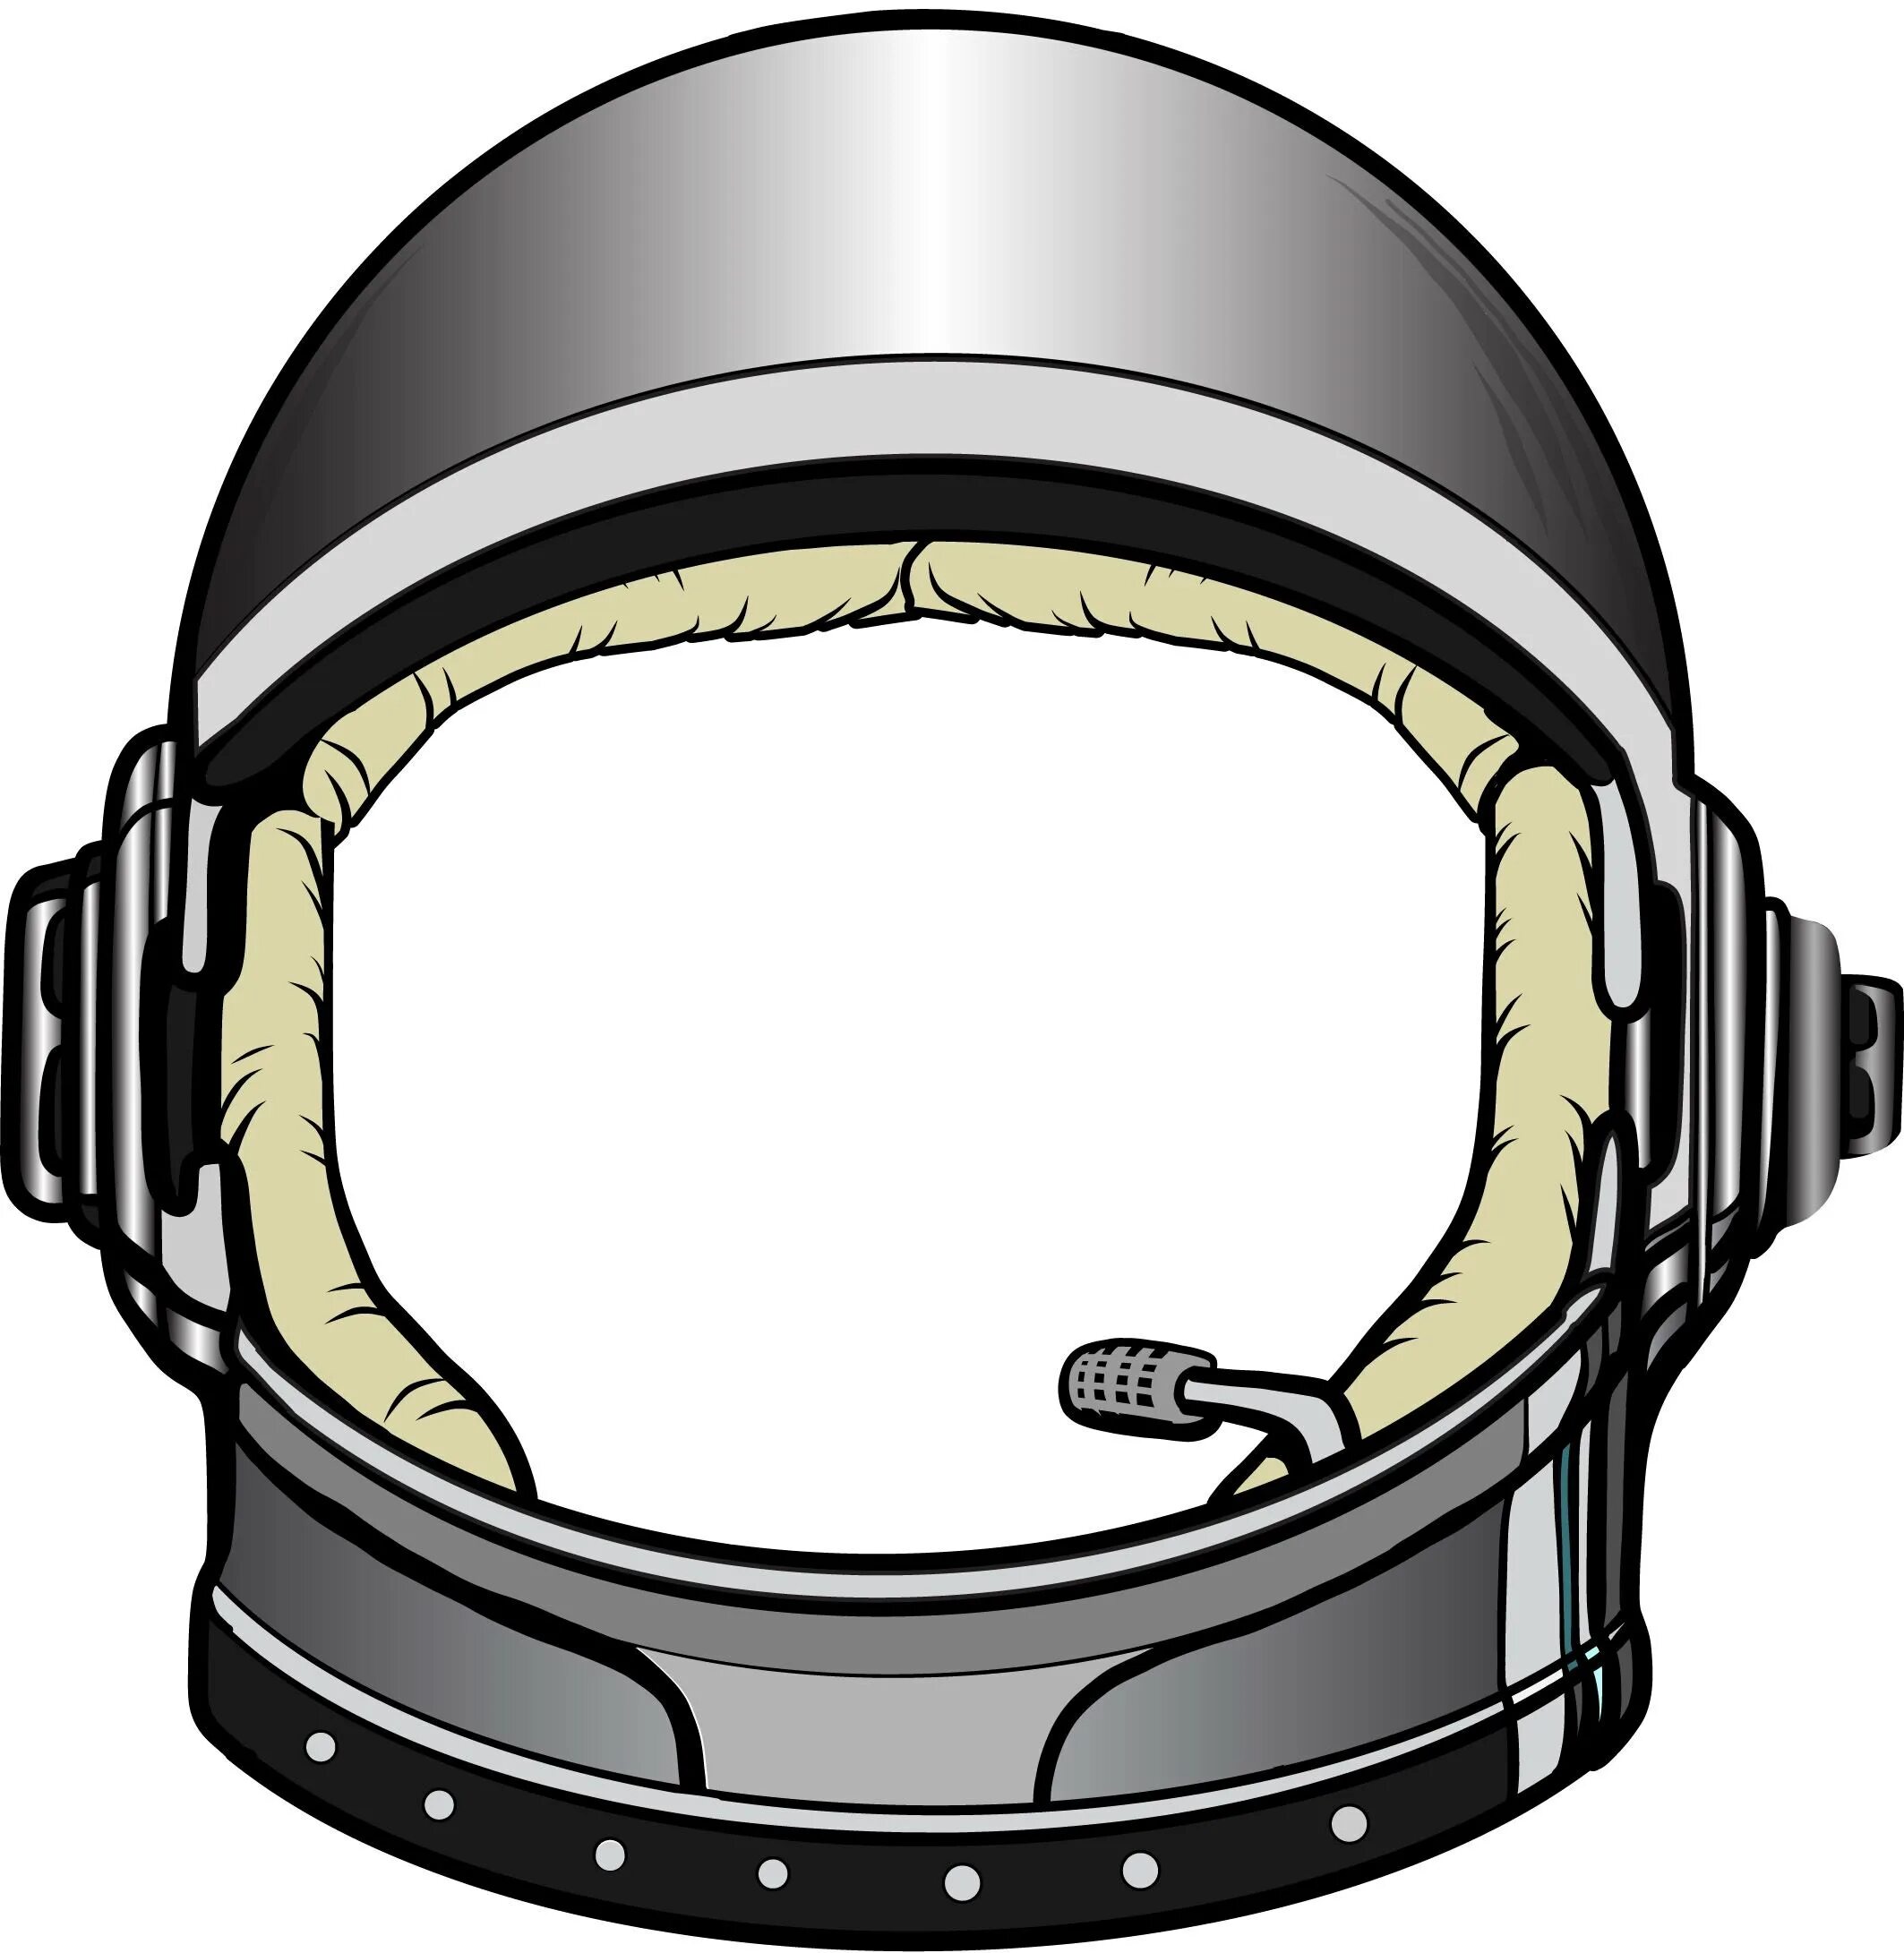 Шлем ко дню космонавтики. Шлем Astronaut Helmet. Шлем скафандра Космонавта. Шлем Космонавта SD IFI. Отражение в шлеме Космонавта сбоку.